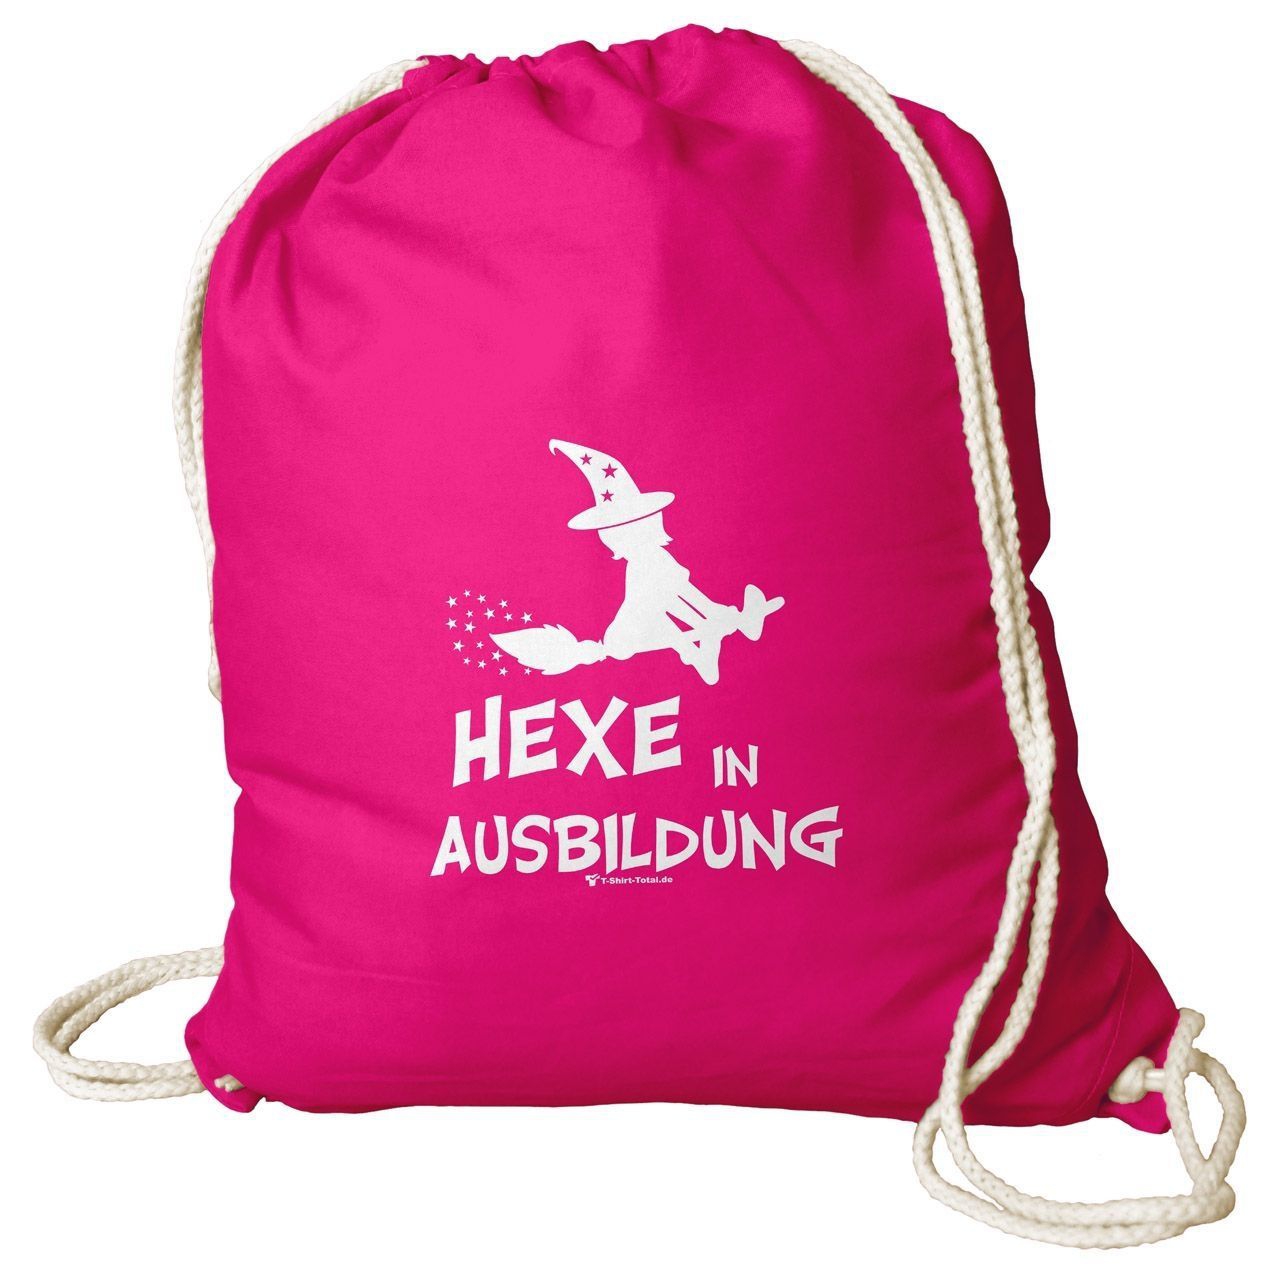 Hexe in Ausbildung Rucksack Beutel pink